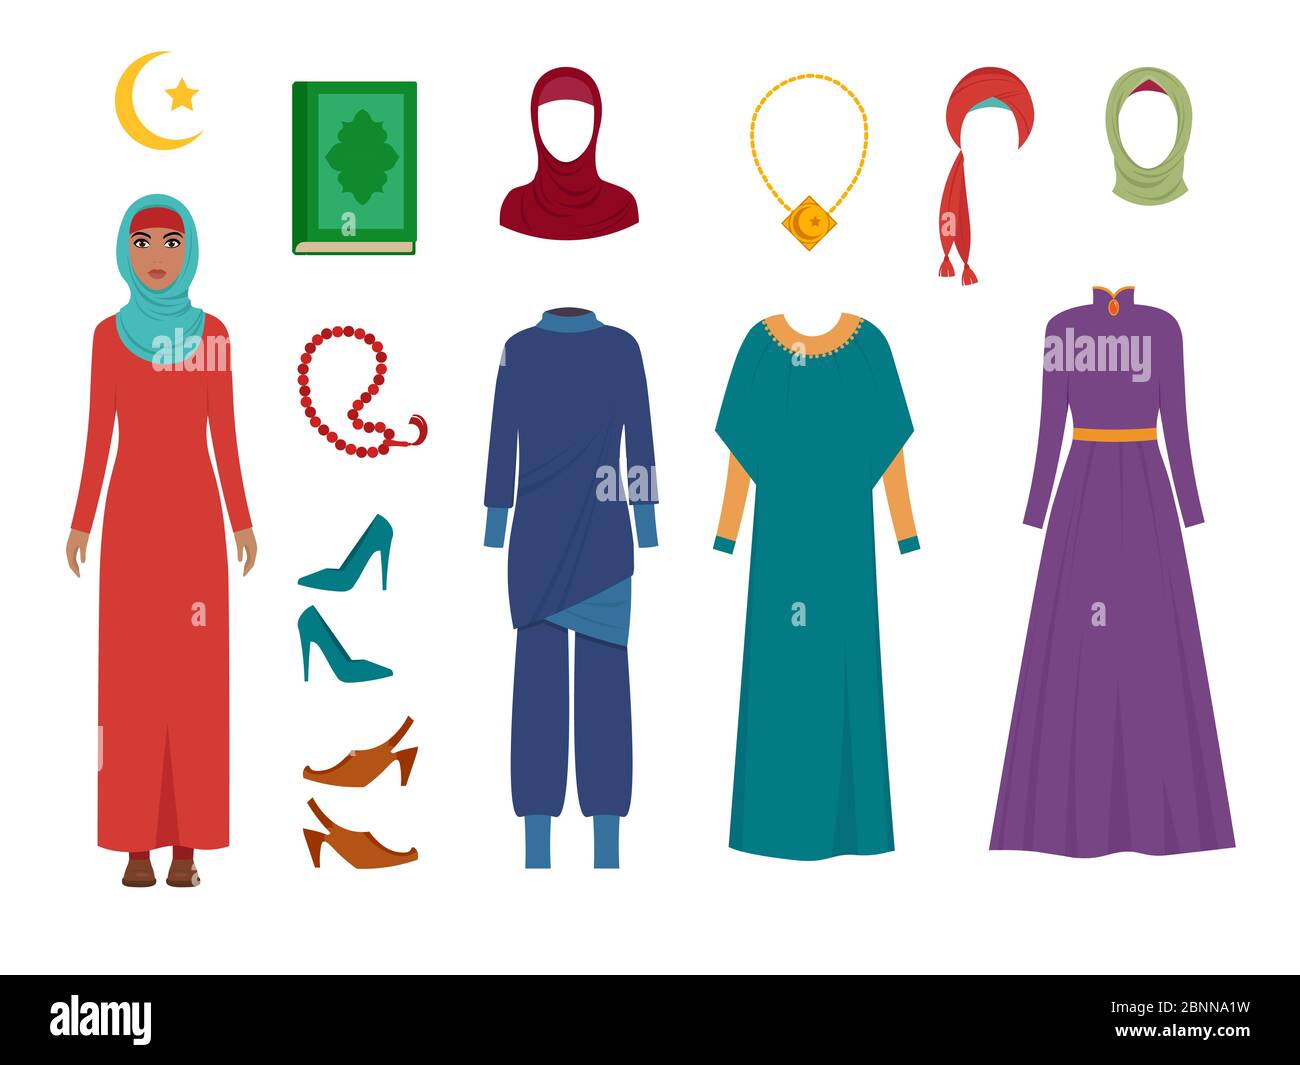 Arabische Damenbekleidung. National islamic Mode weibliche Garderobe Artikel Kopftuch Hijab Kleid iranische muslime türkische Mädchen Vektor-Bilder Stock Vektor